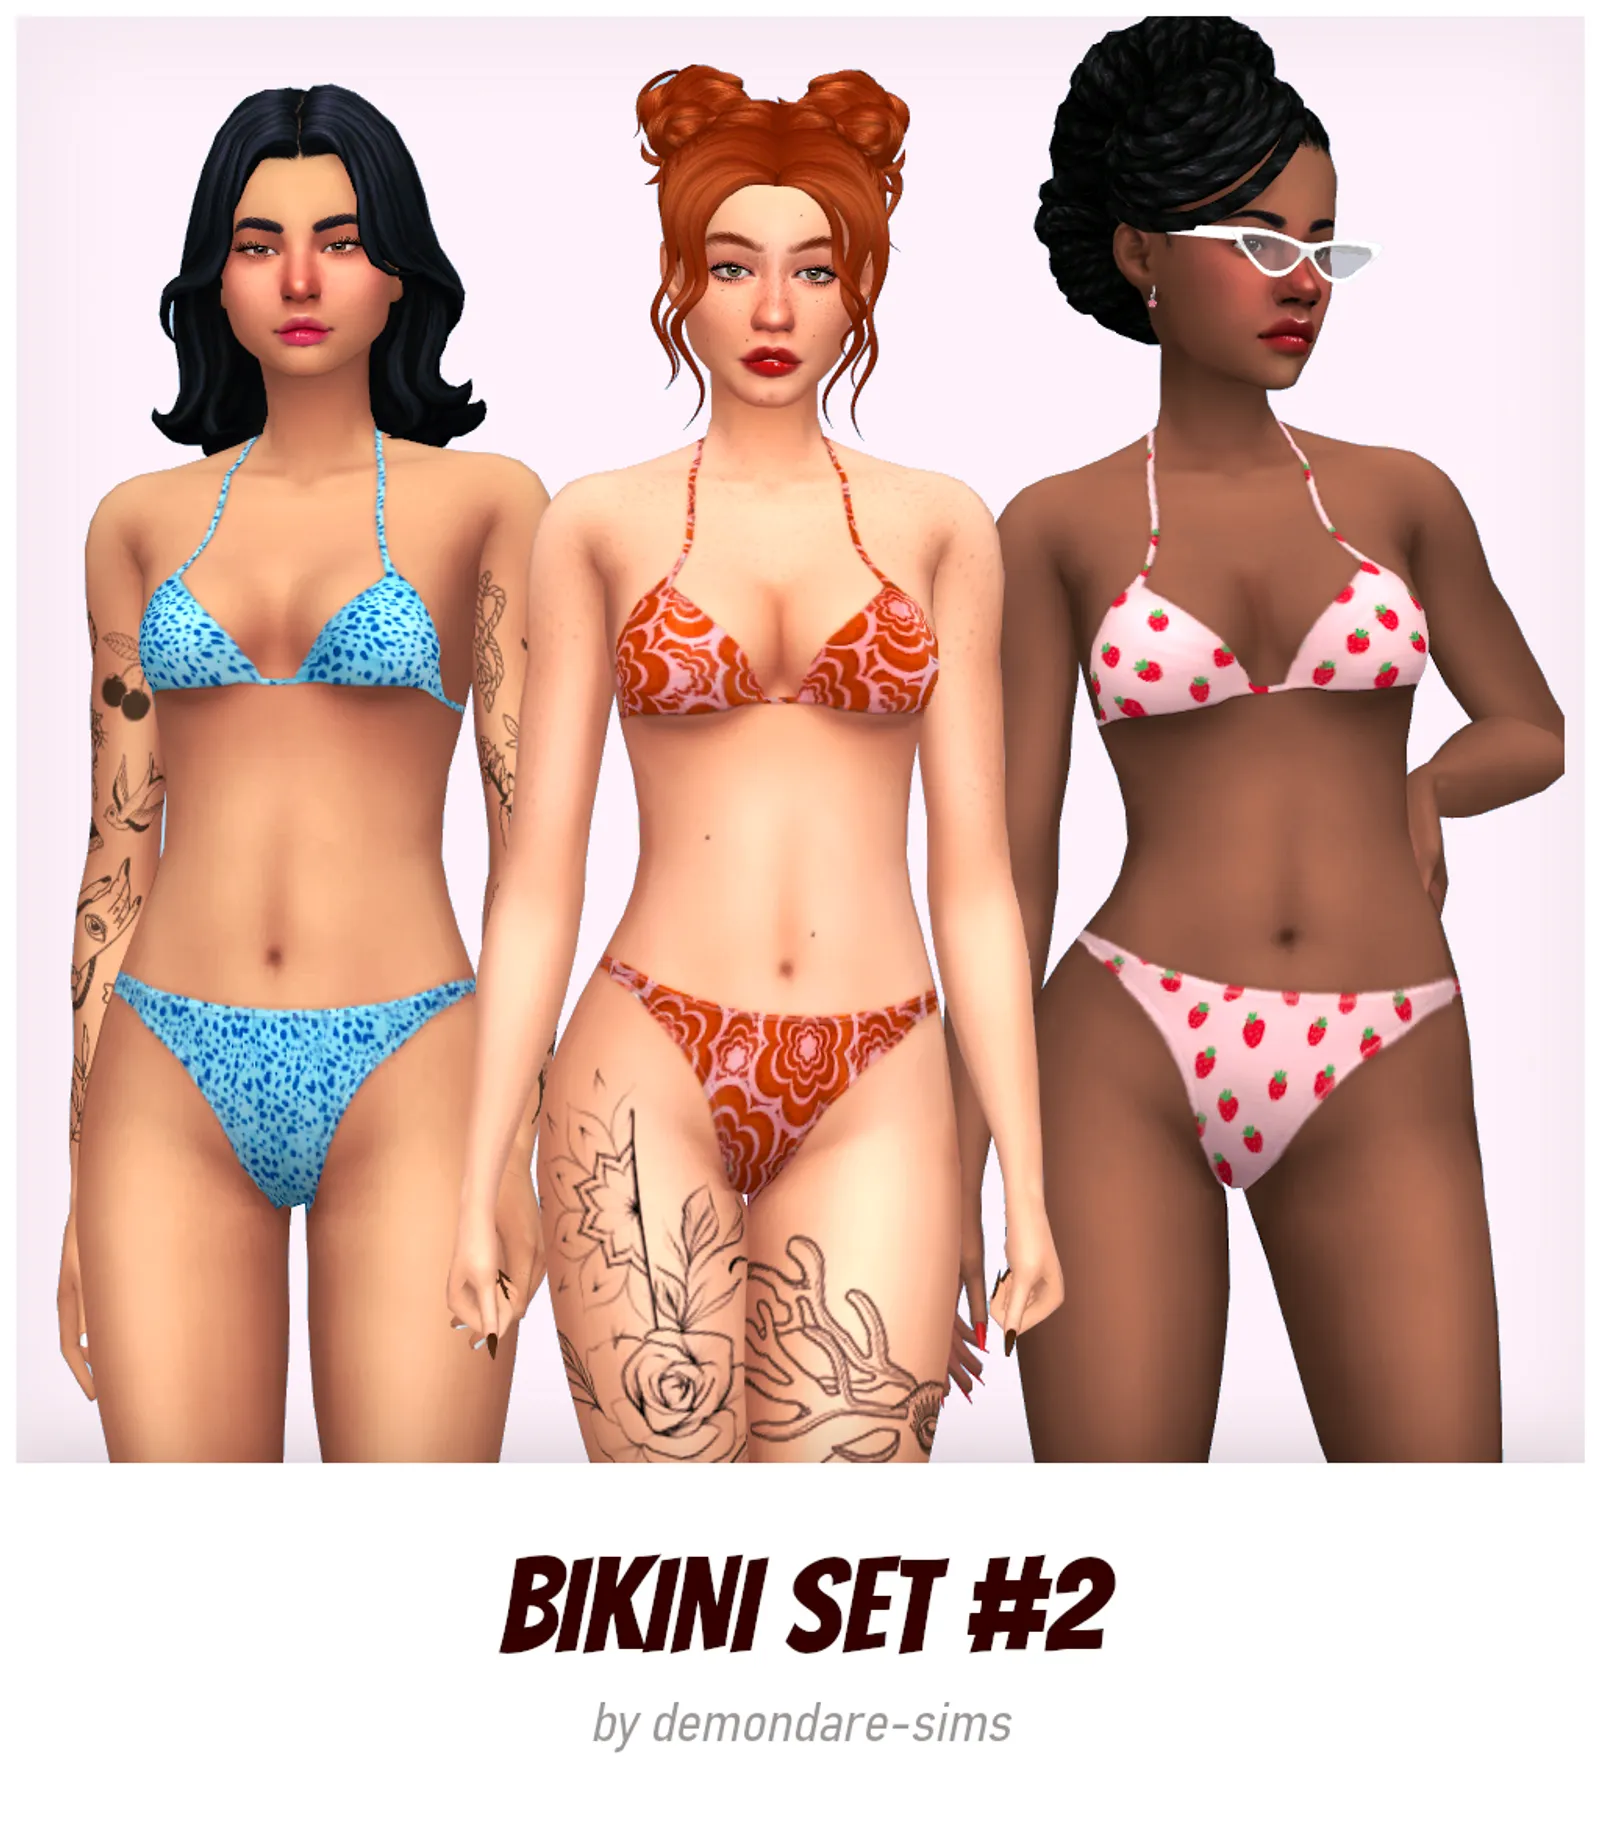 Bikini set #2